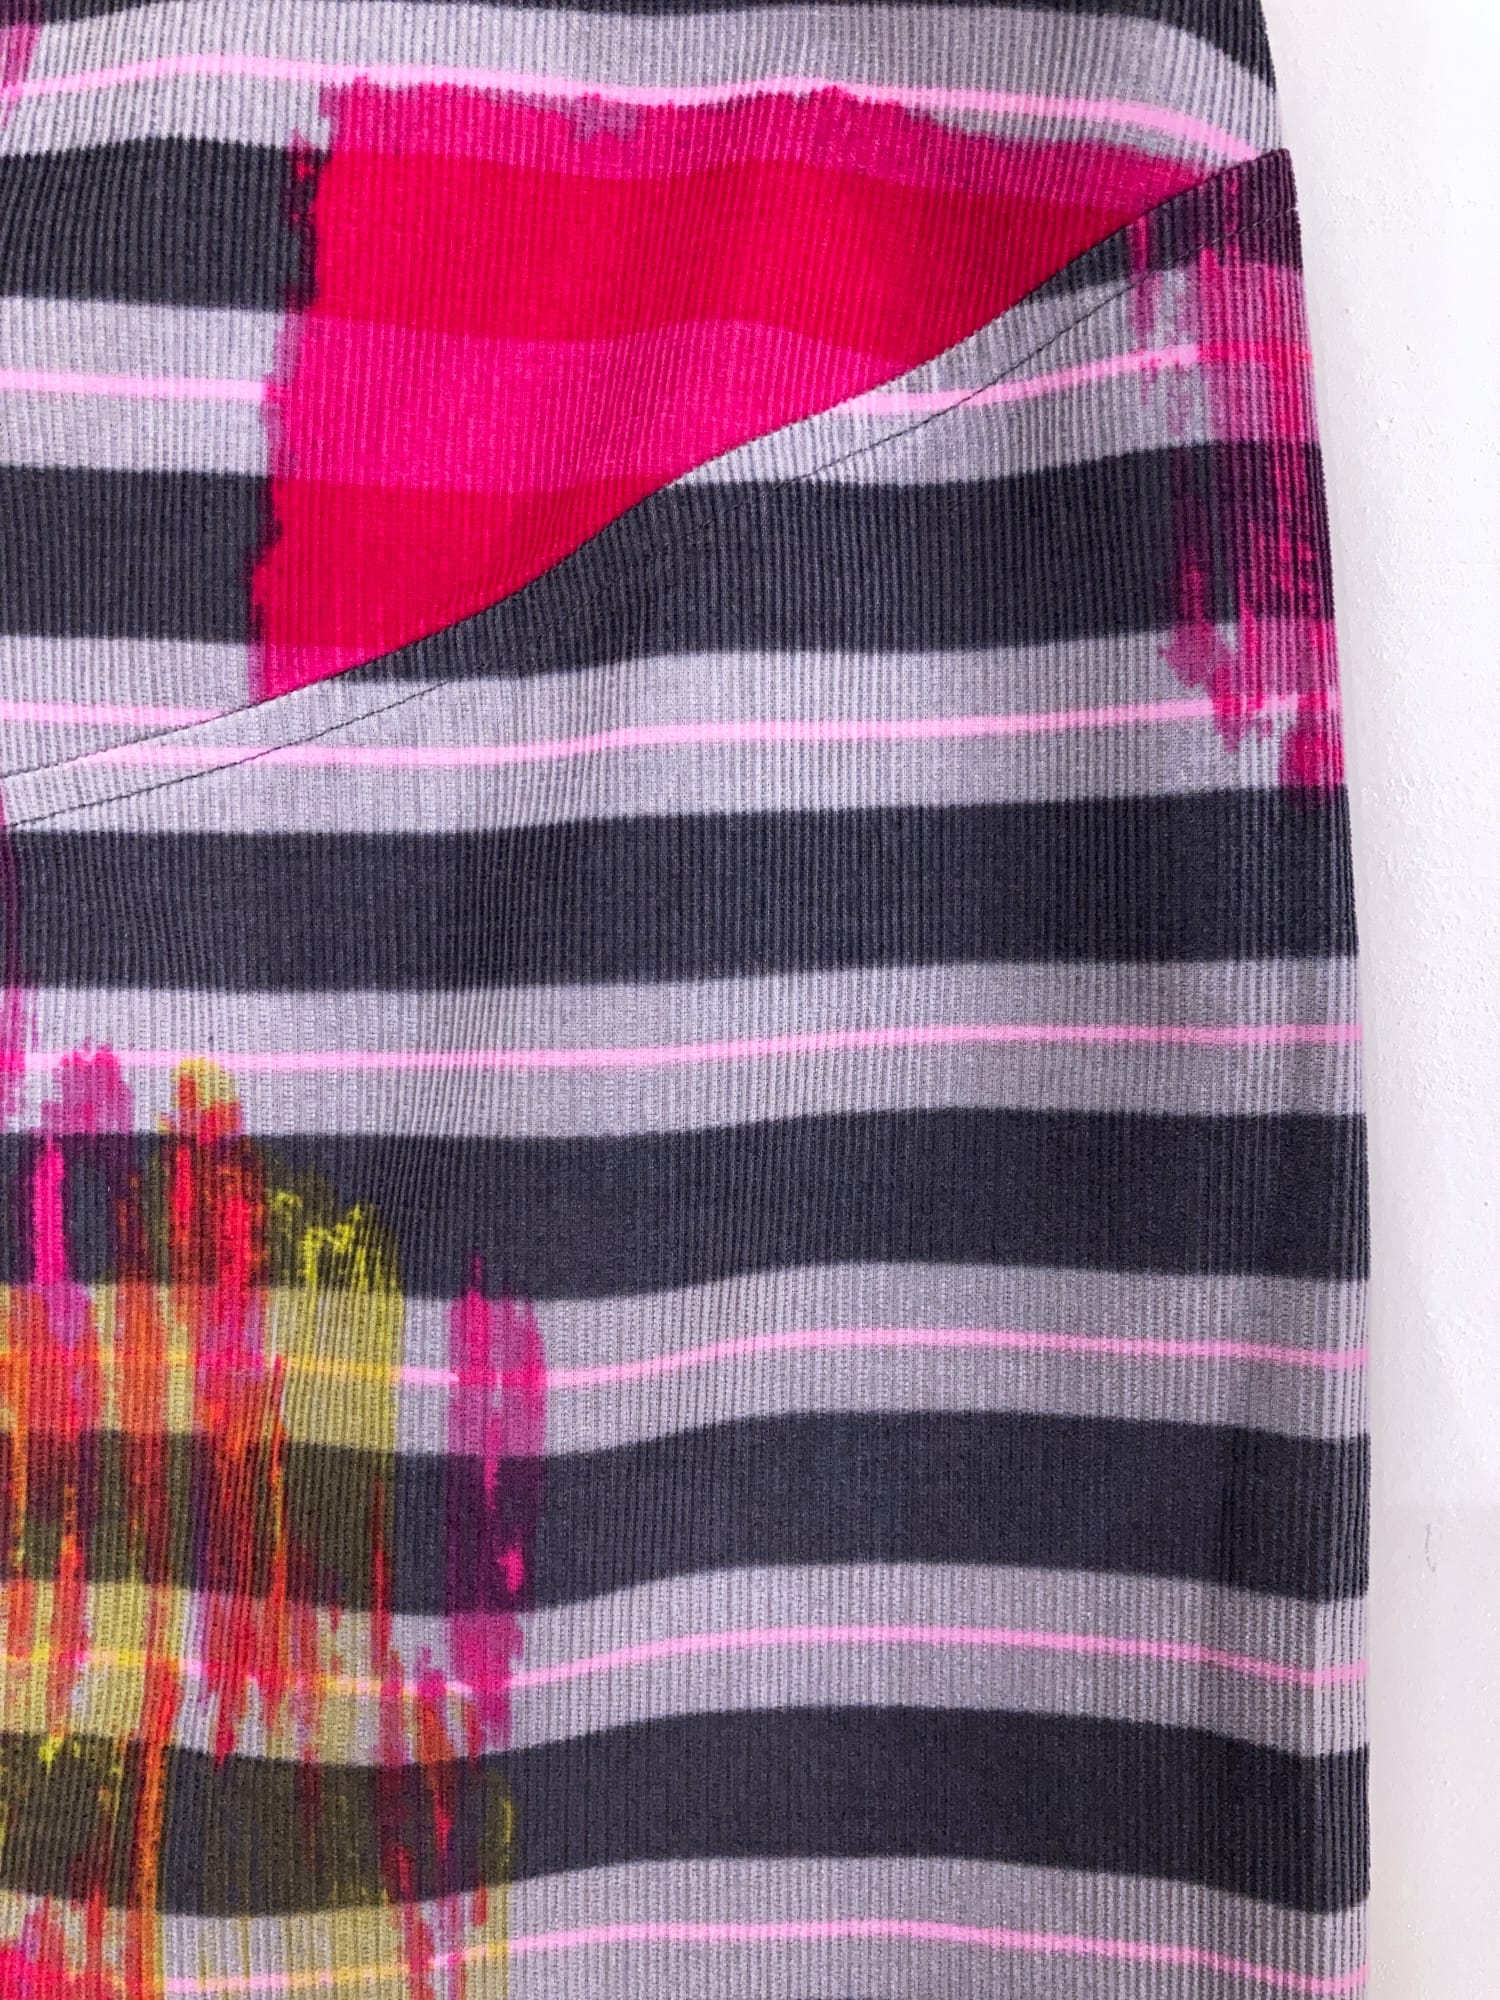 Bazar Christian Lacroix multicolour striped corduroy paint splatter skirt